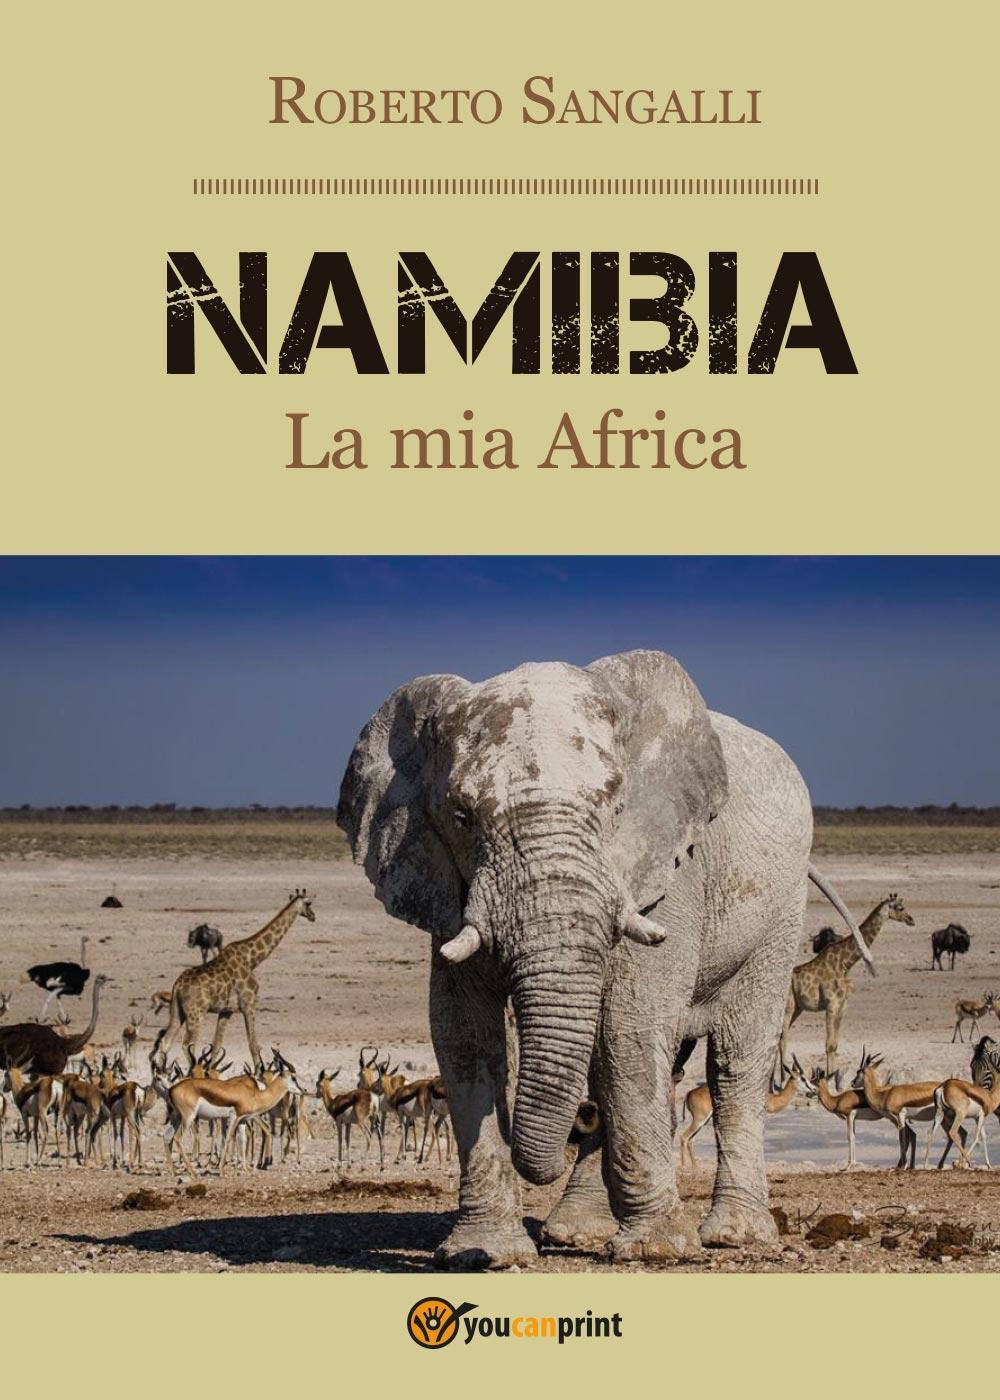 Libri Roberto Sangalli - Namibia. La Mia Africa NUOVO SIGILLATO, EDIZIONE DEL 09/11/2016 SUBITO DISPONIBILE